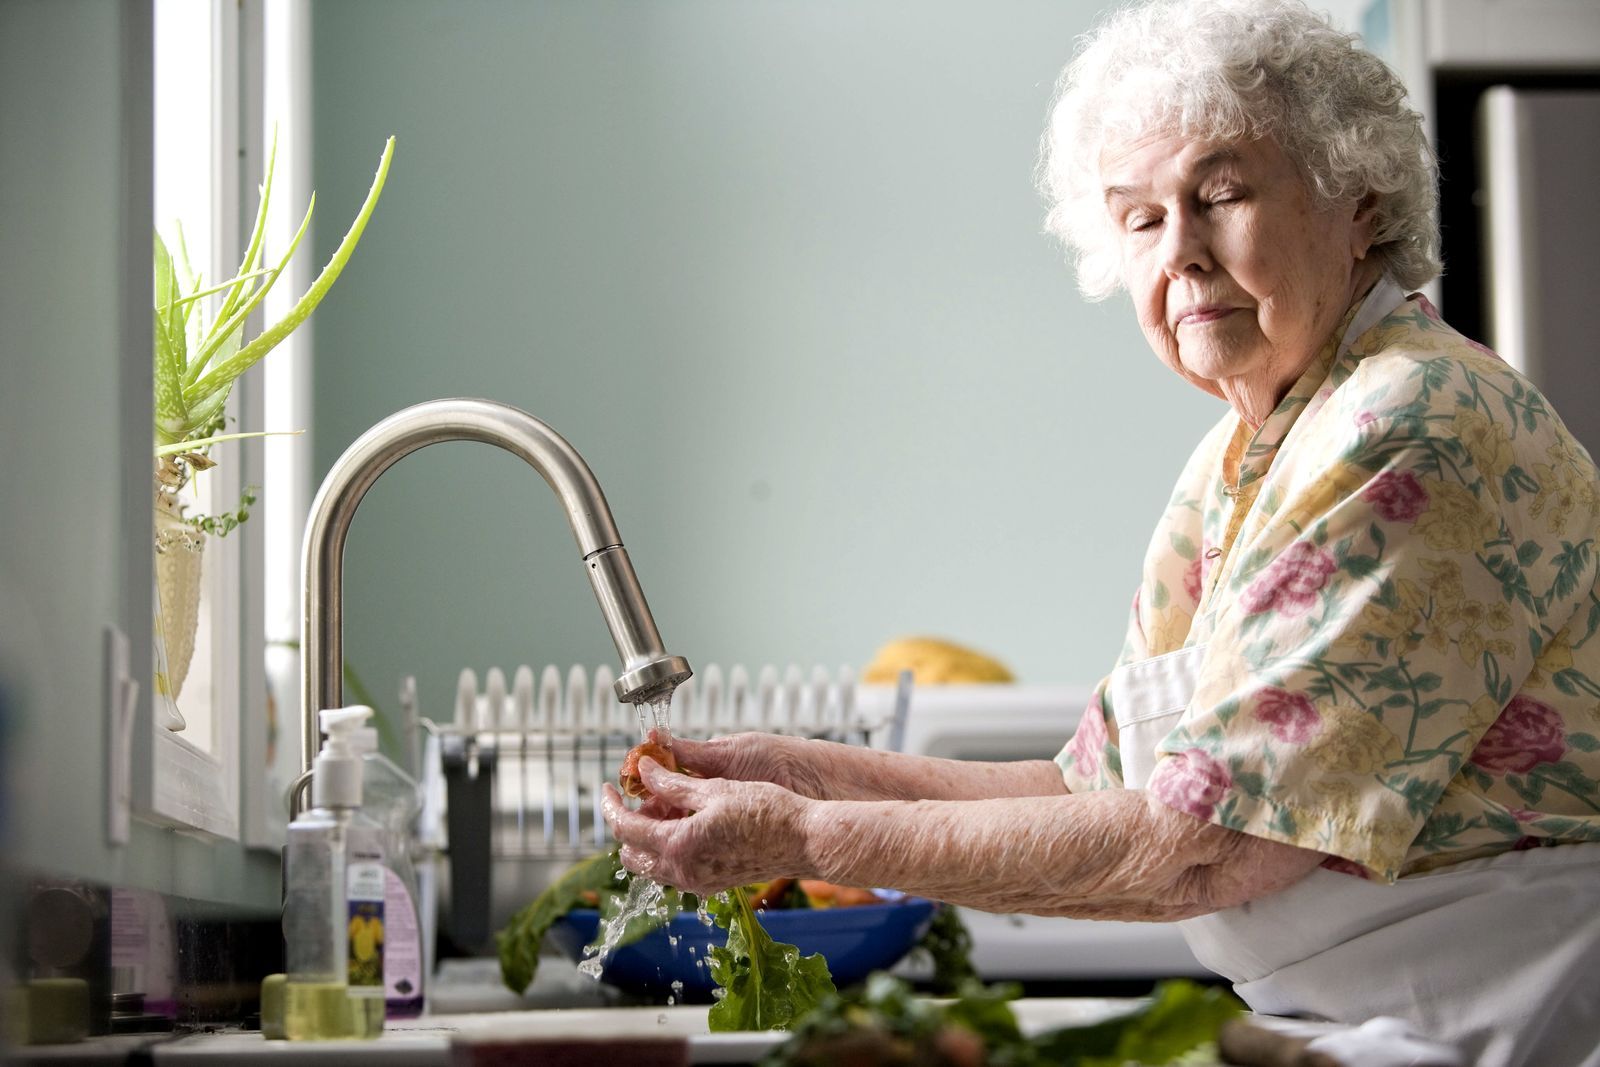 Češi pomáhají osamělým seniorům před koronavirem. Nakupují jim jídlo, zařizují léky, venčí jejich mazlíčky